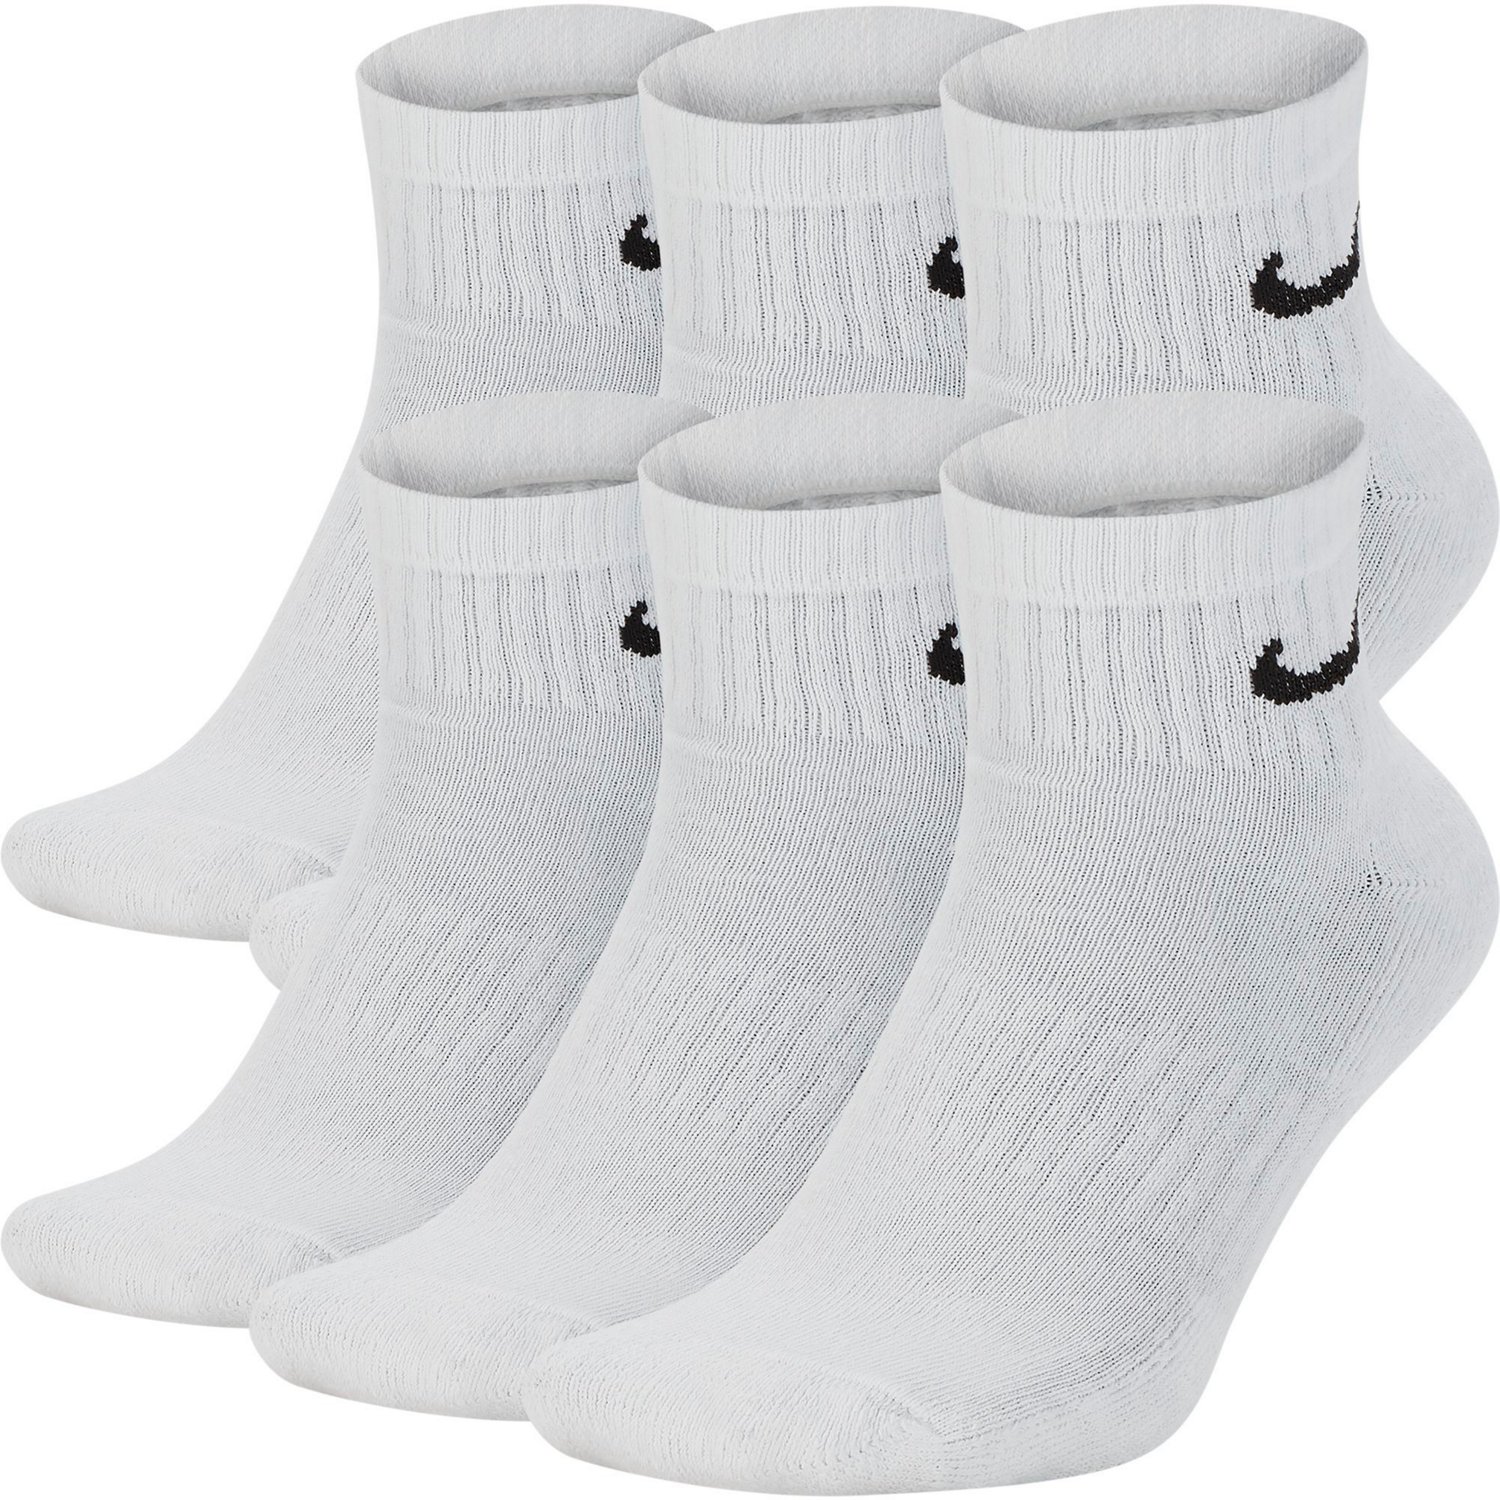 Nike Men's Everyday Cushioned Quarter-Length Training Socks 6 Pack